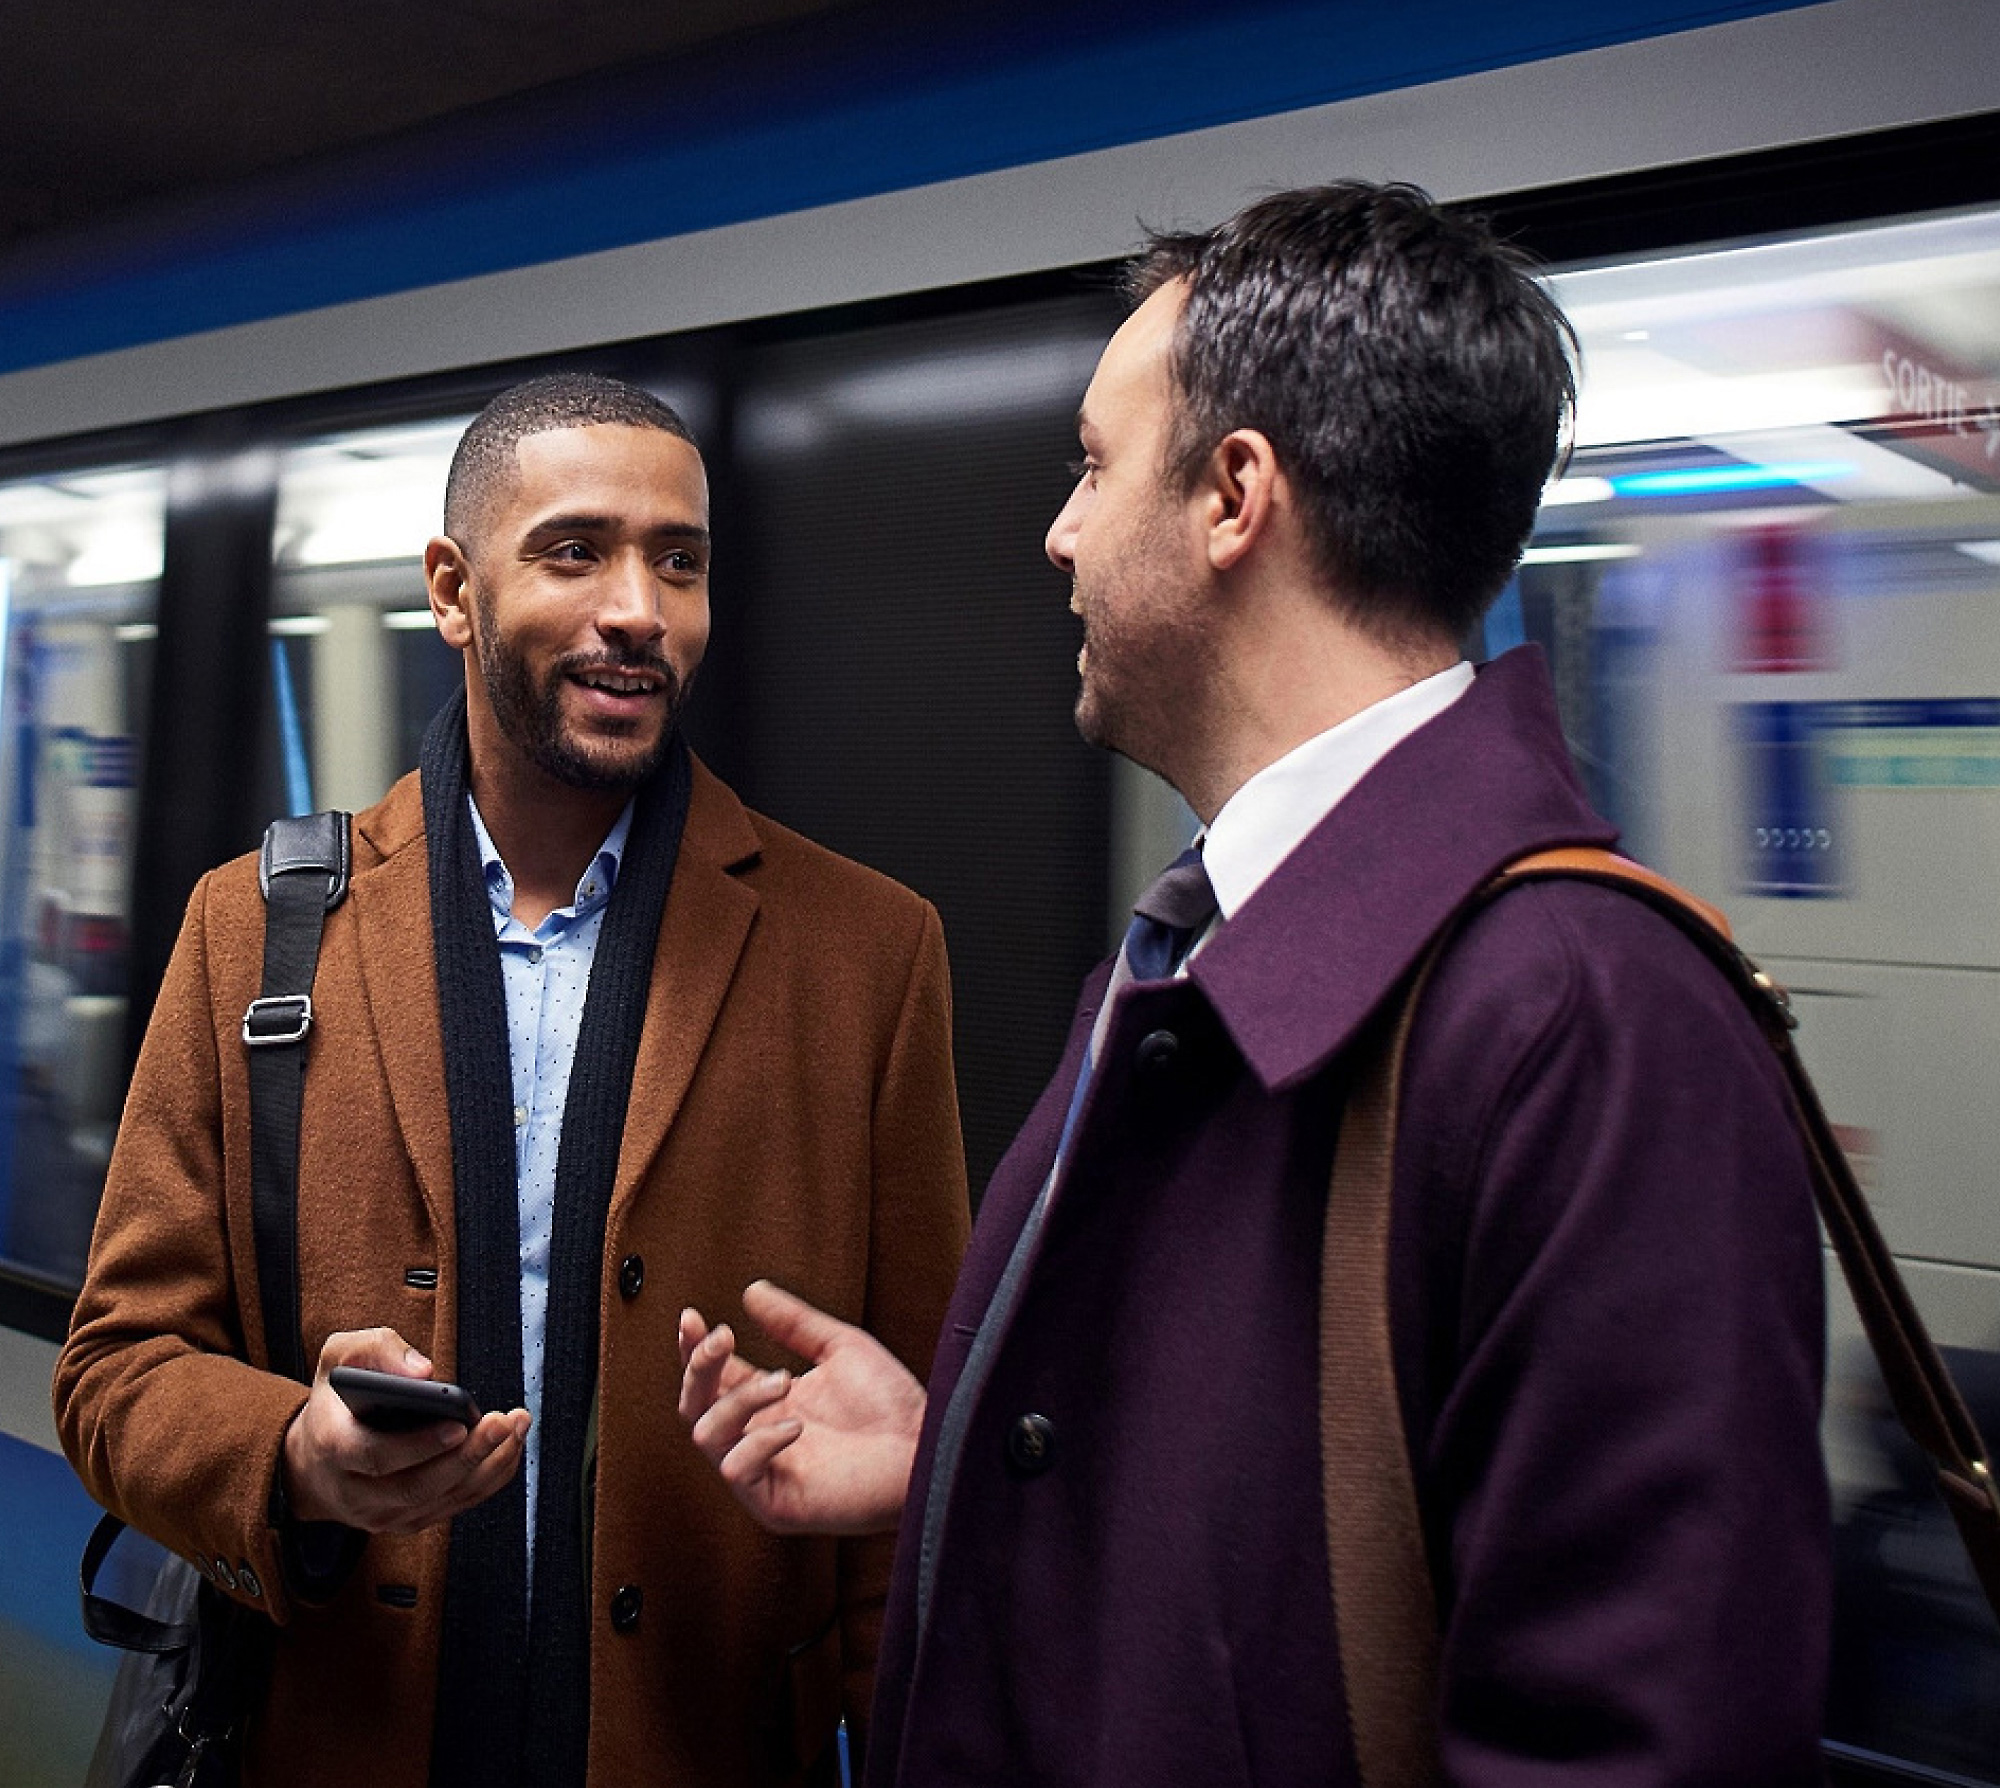 Zwei Männer, die sich auf einer U-Bahn-Plattform unterhalten, während einer ein Smartphone hält und ein Zug im Hintergrund verschwommen in Bewegung ist.